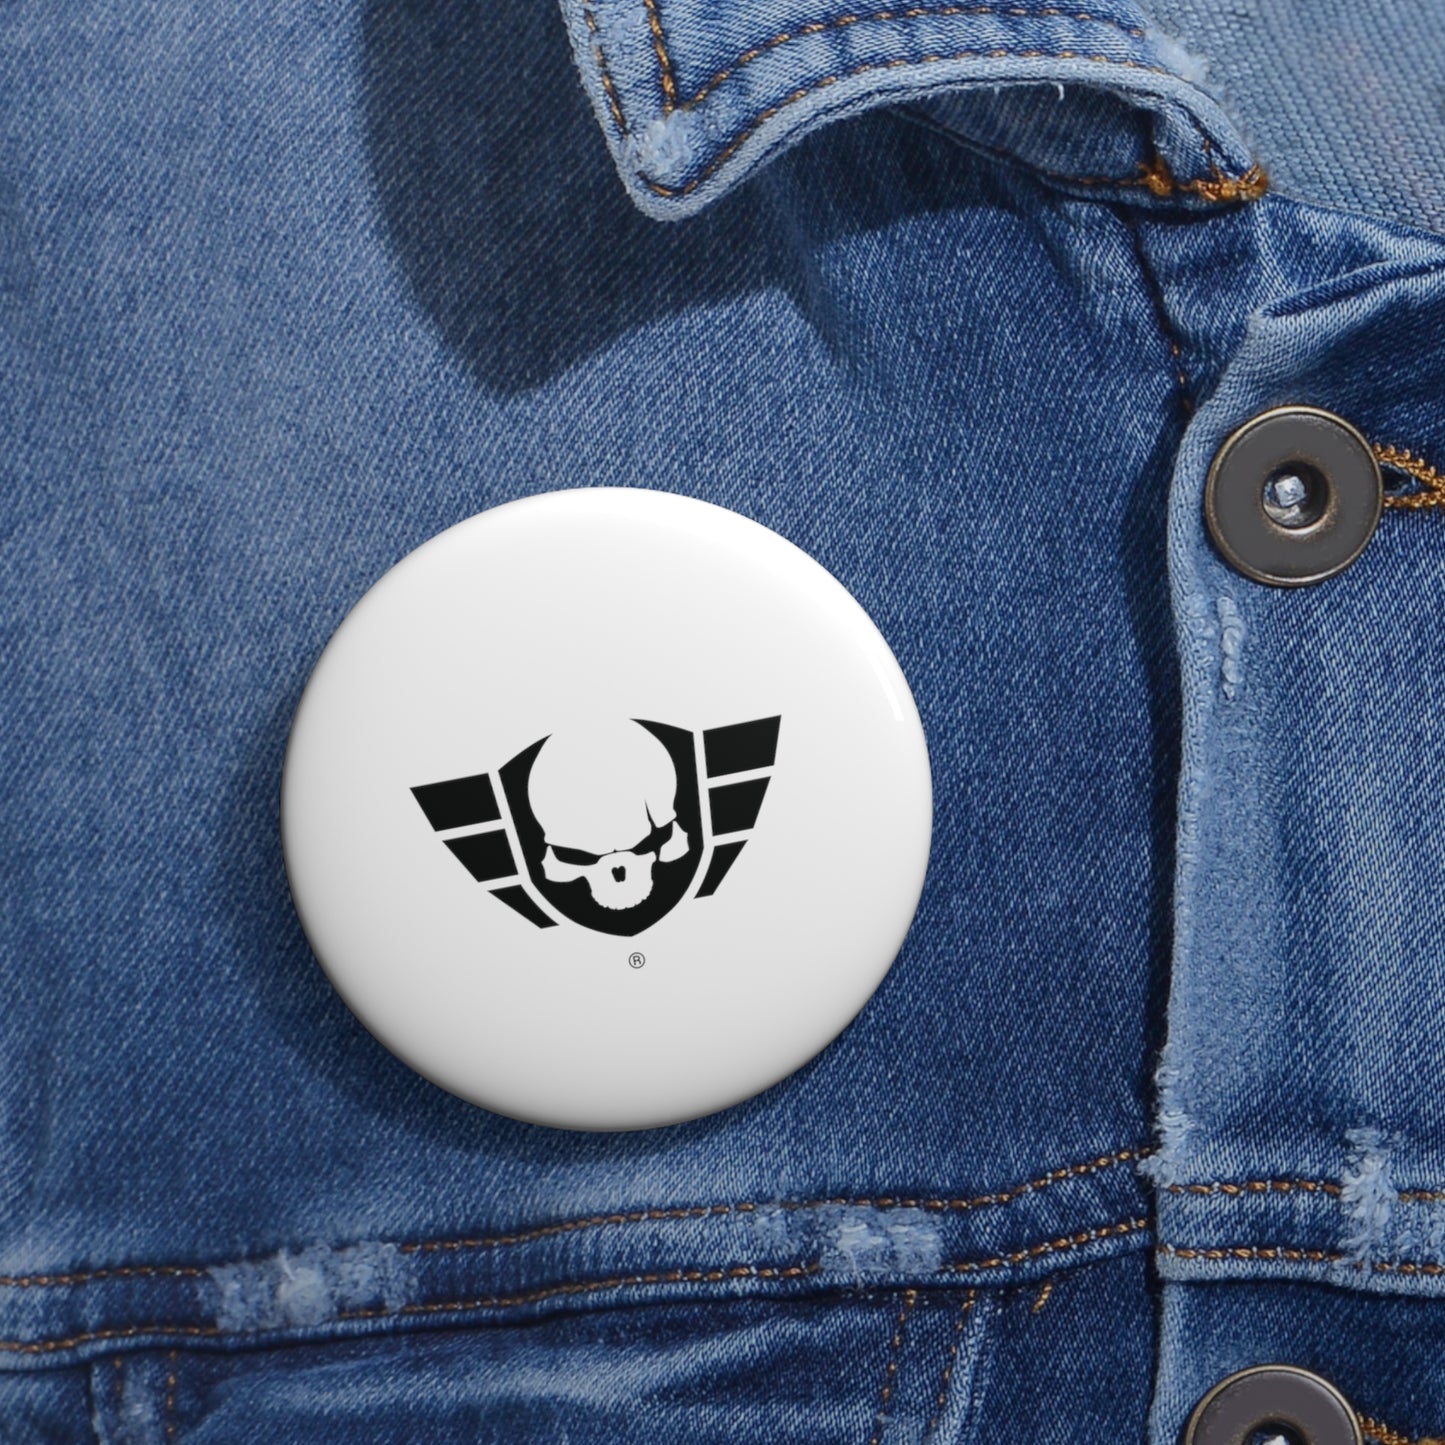 Warsaken® Button Pin : White